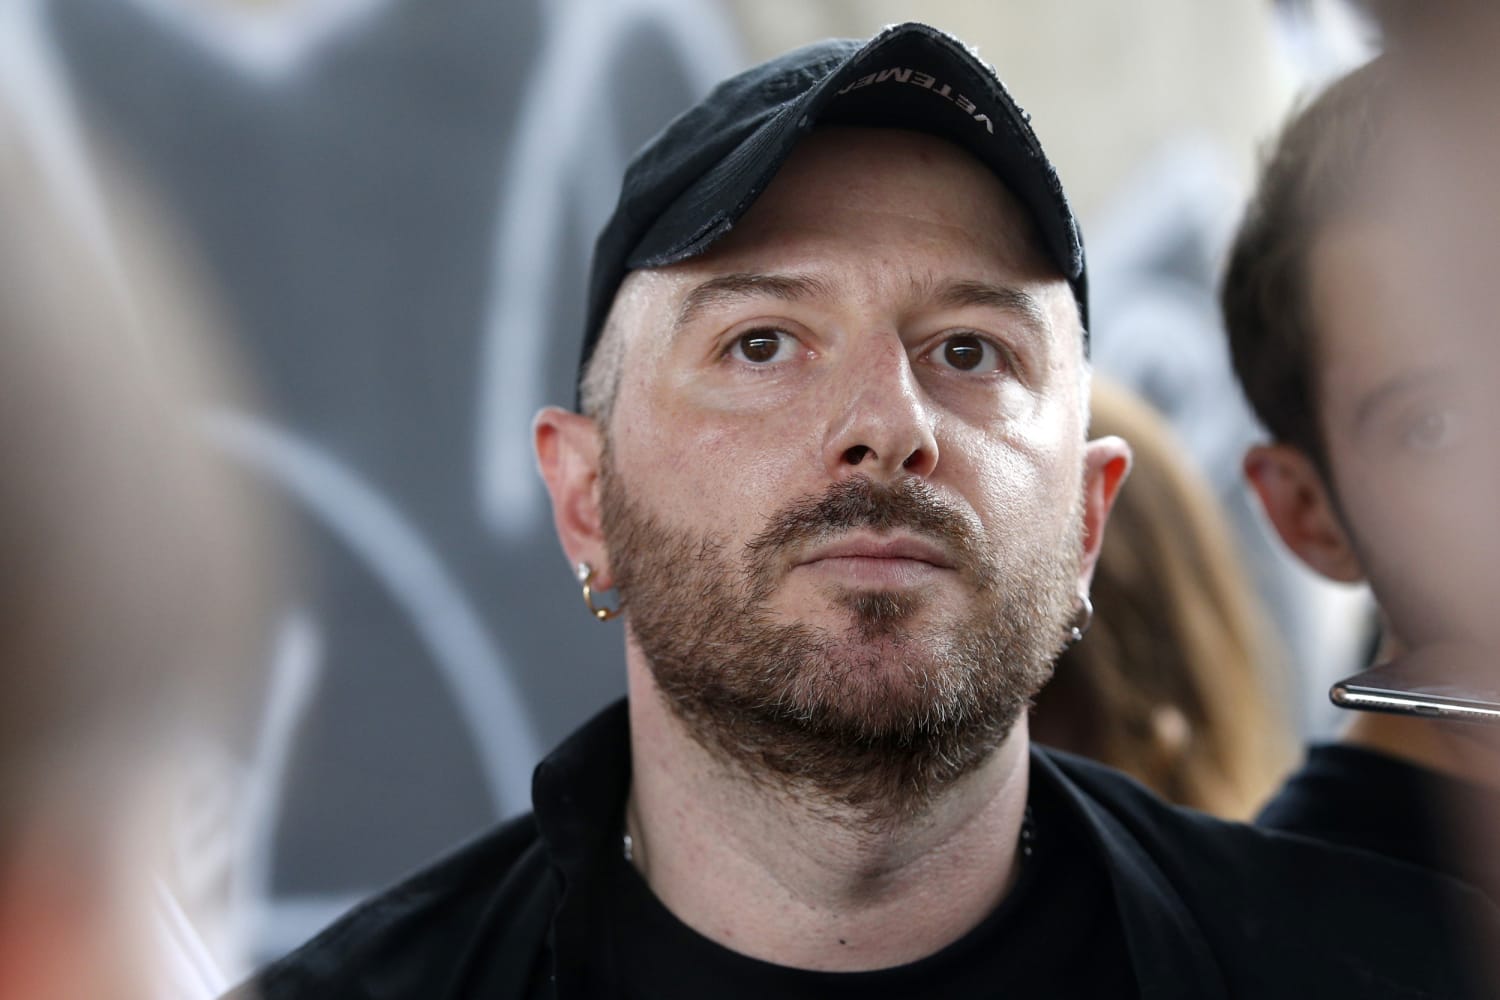 Balenciaga’s creative director apologizes for ‘wrong artistic choice of concept’